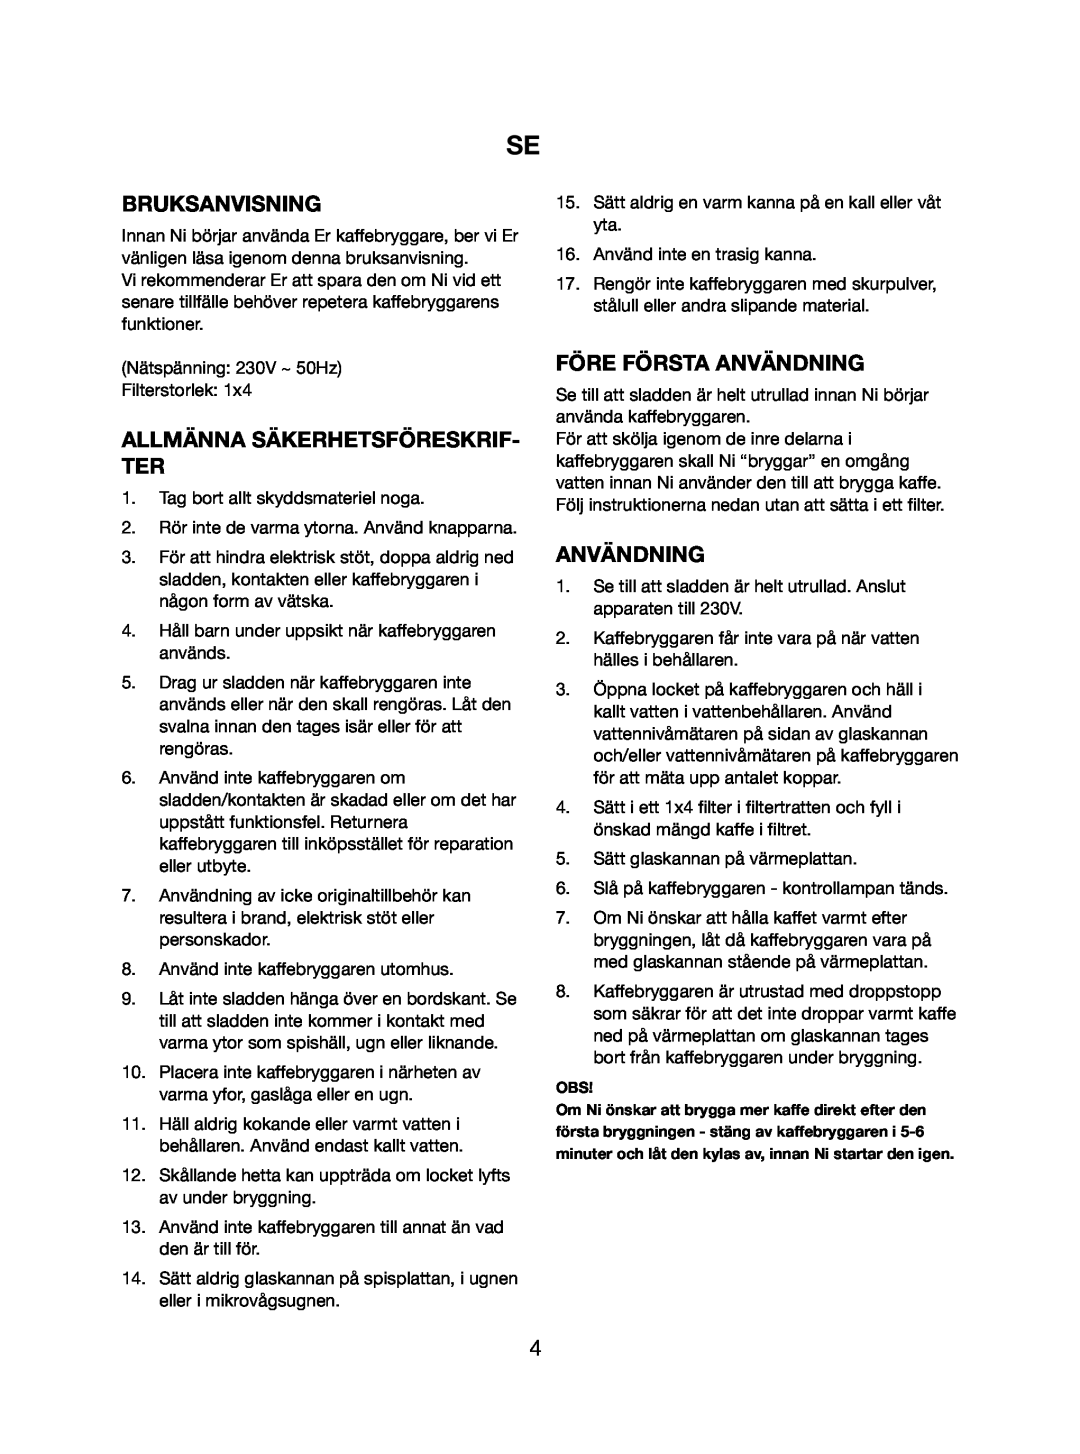 Melissa 745-112 manual Bruksanvisning, Allmänna Säkerhetsföreskrif- Ter, Före Första Användning 